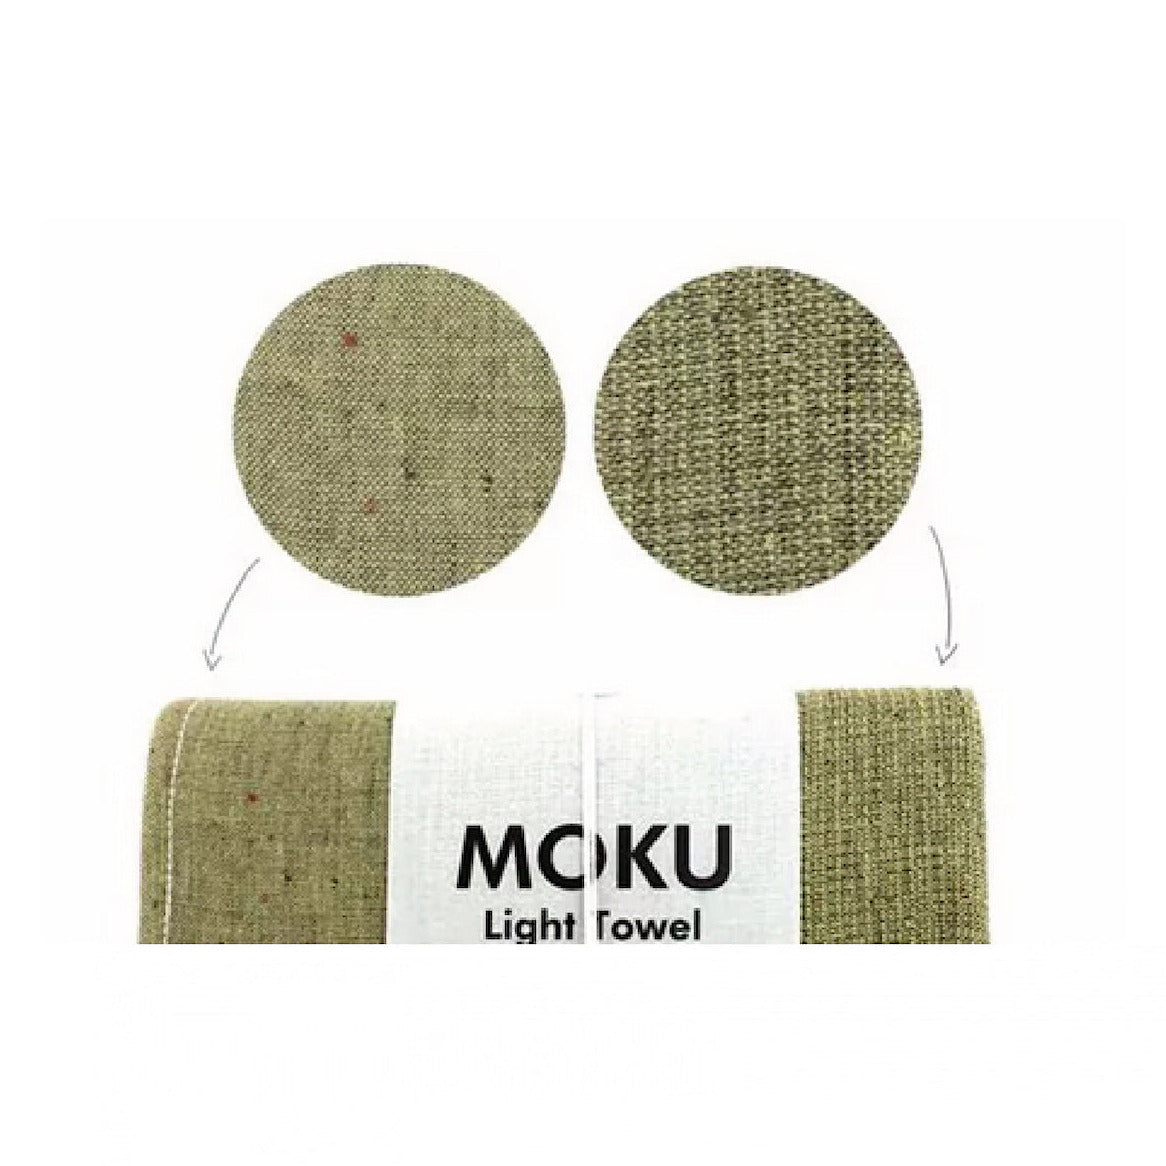 Moku M | Baumwoll-Handtuch von Kontex | 33 x 100cm | Made in Japan